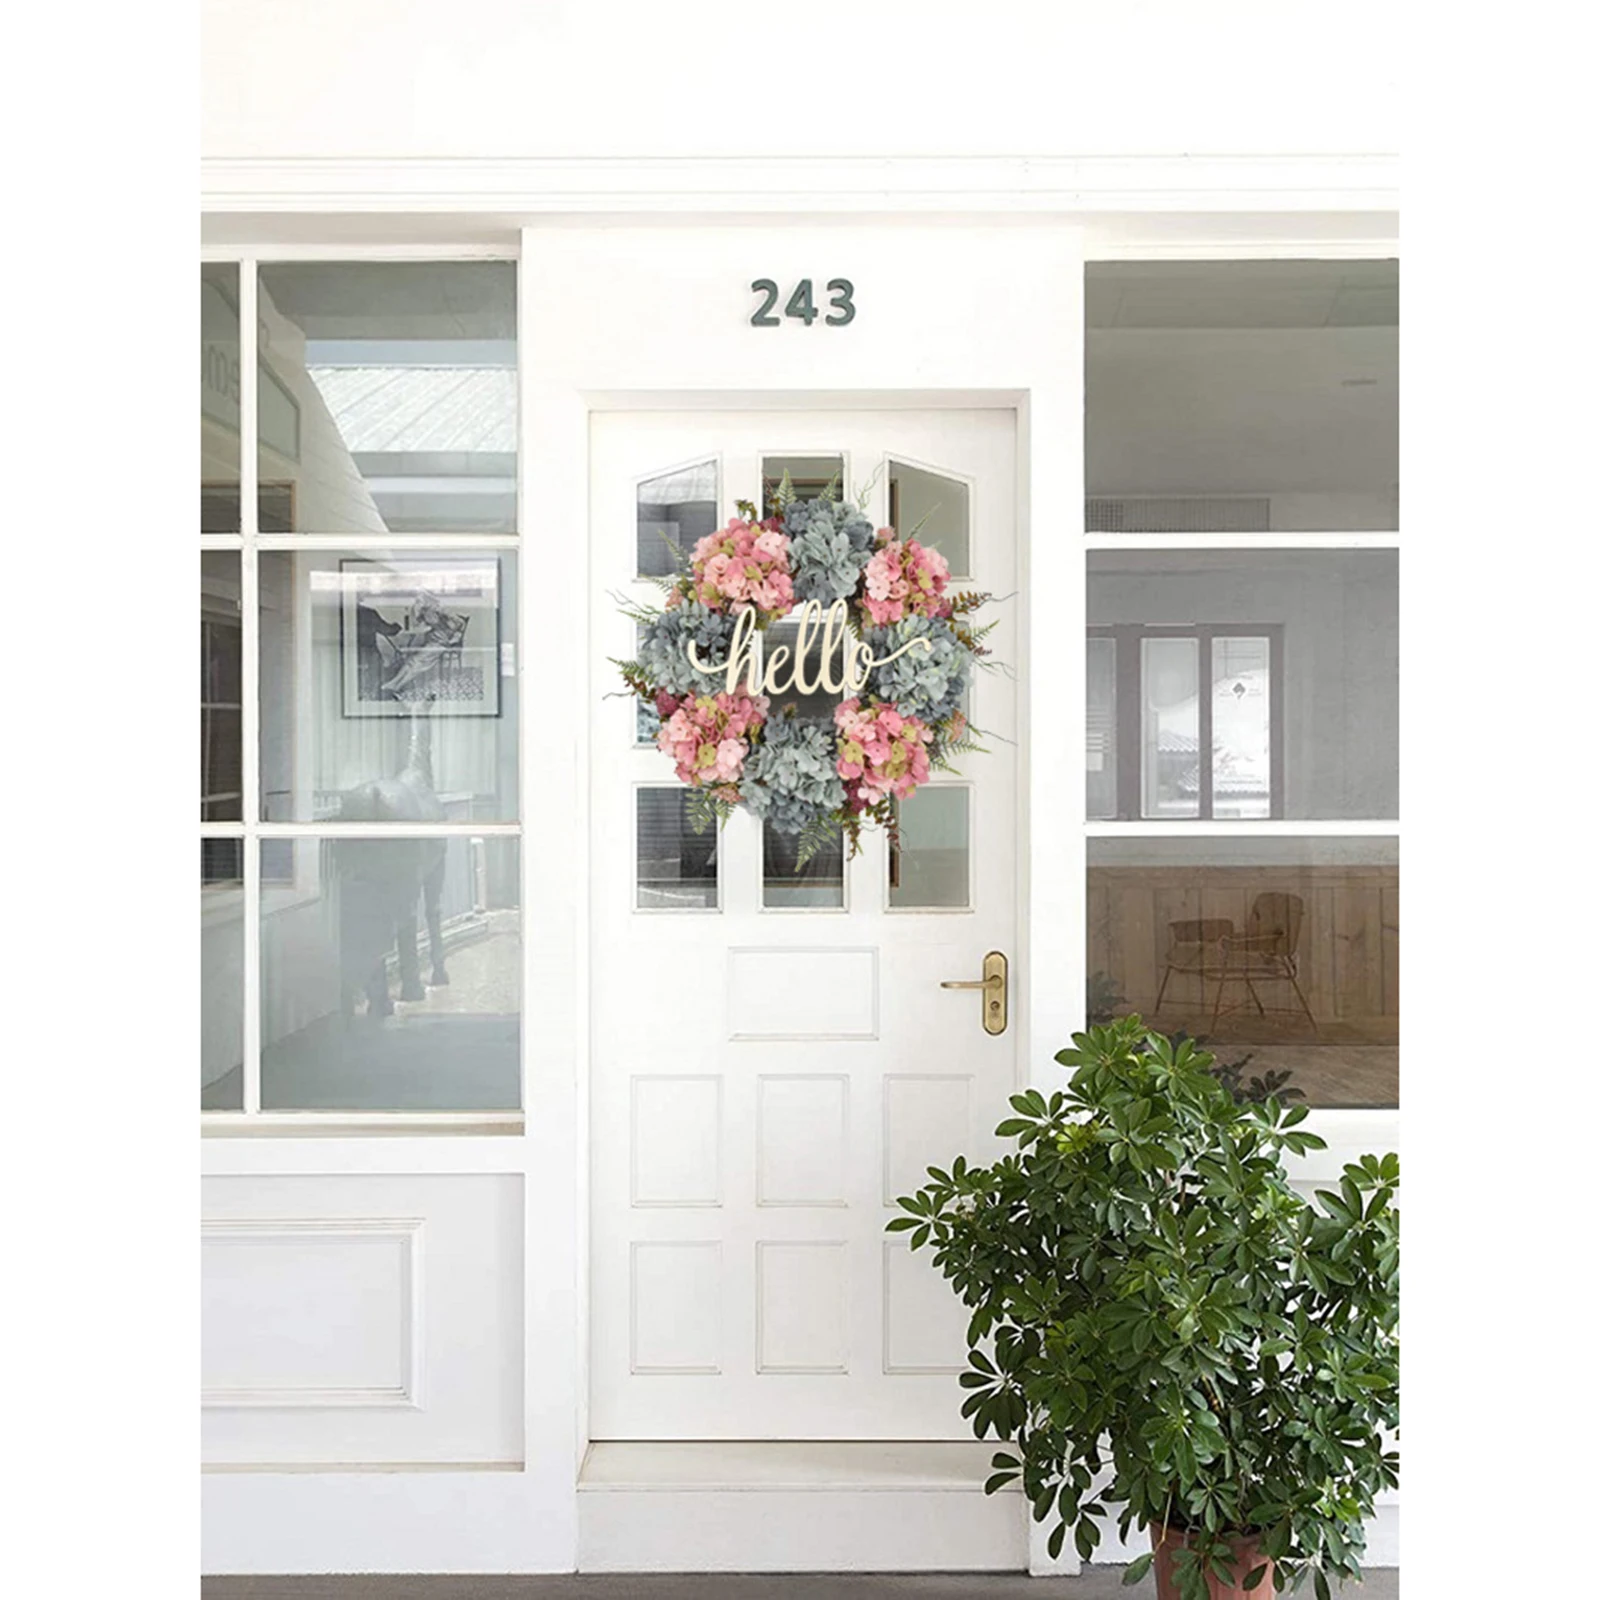 Hydrangea Wreath Handmade Garland Indoor Outdoor Front Door Wedding Holiday Decorations